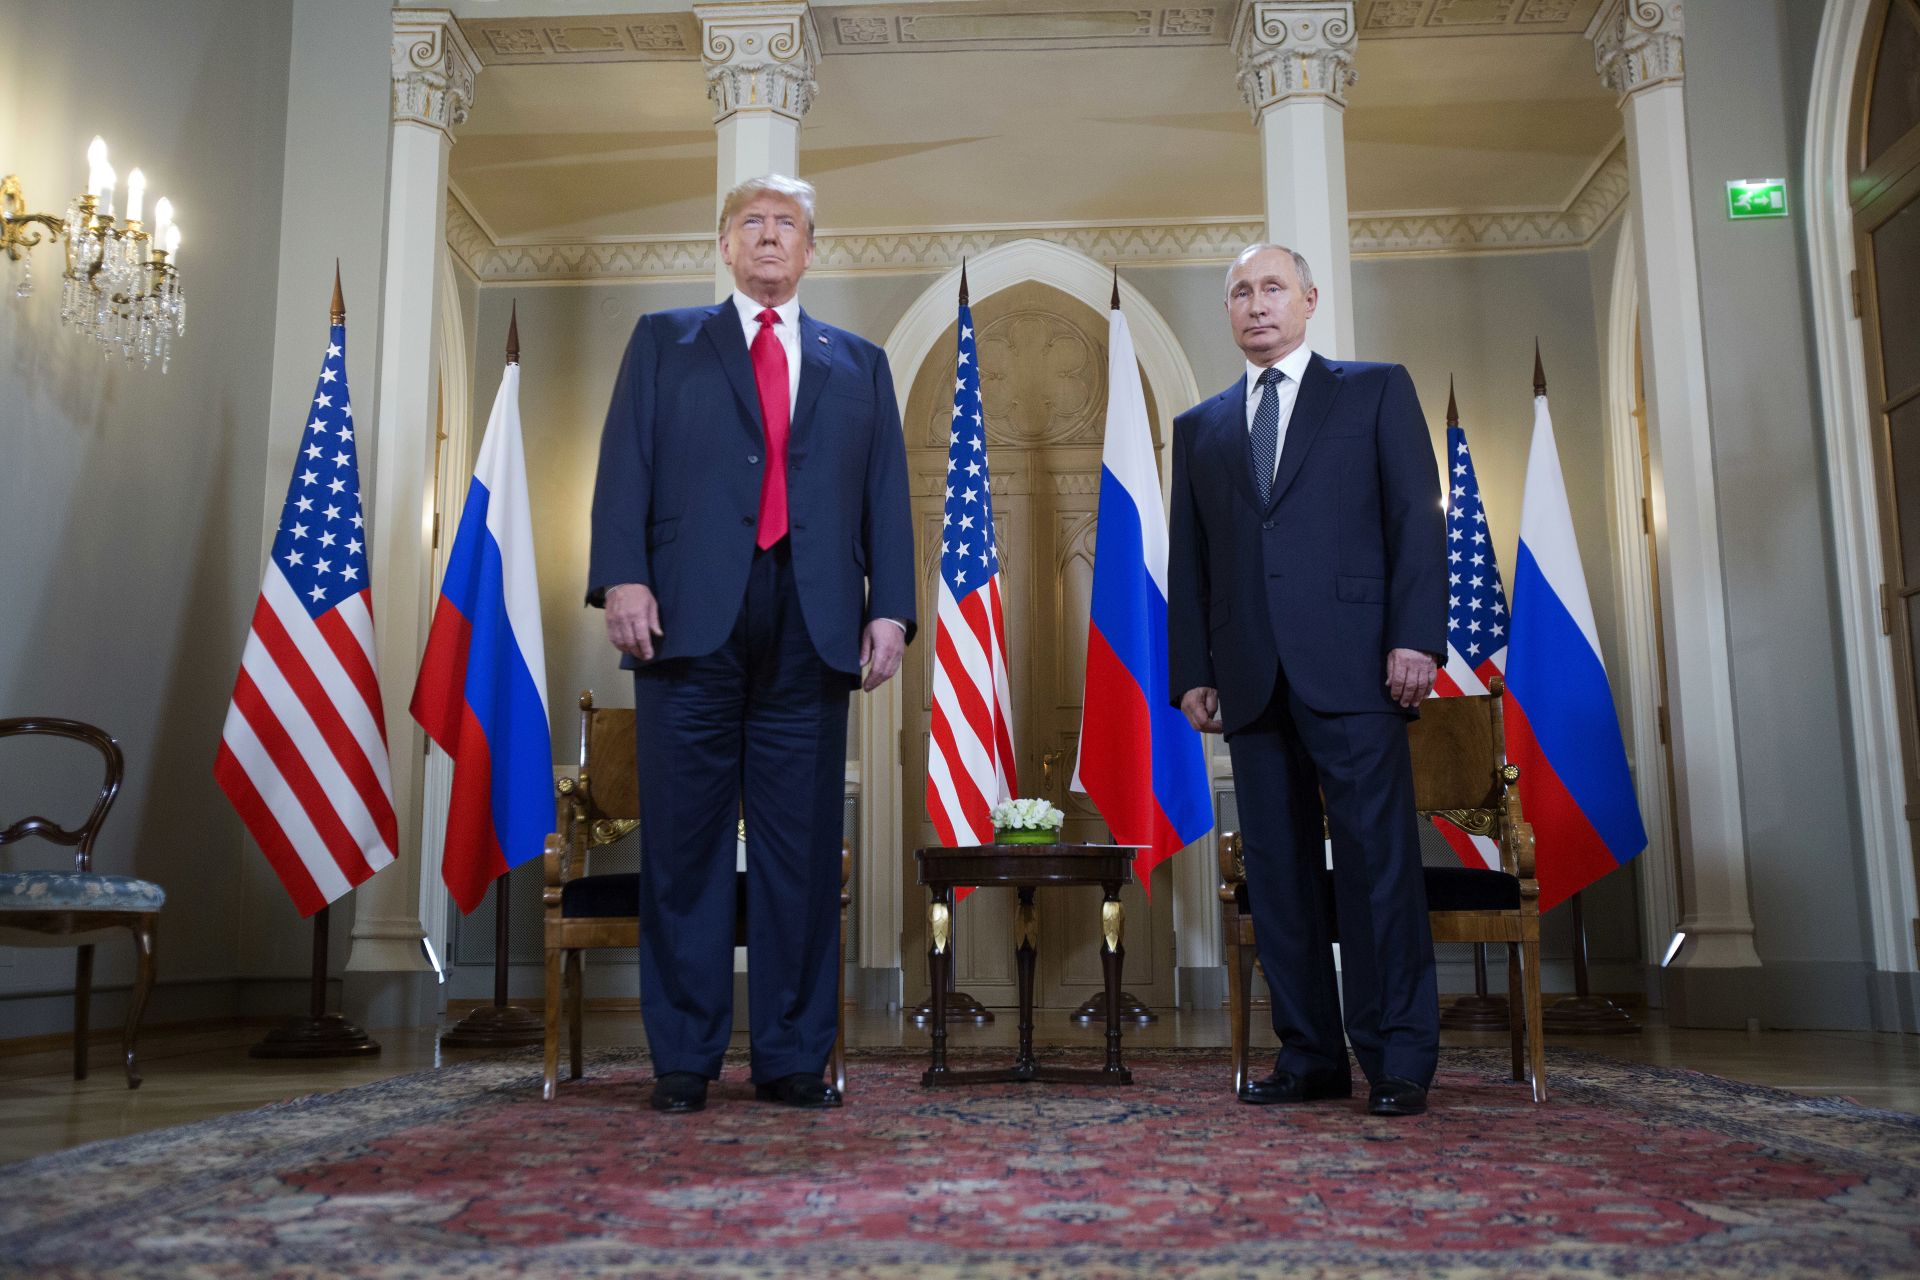 САЩ и Русия имат шанс да изградят добри отношения помежду си, смята Тръмп